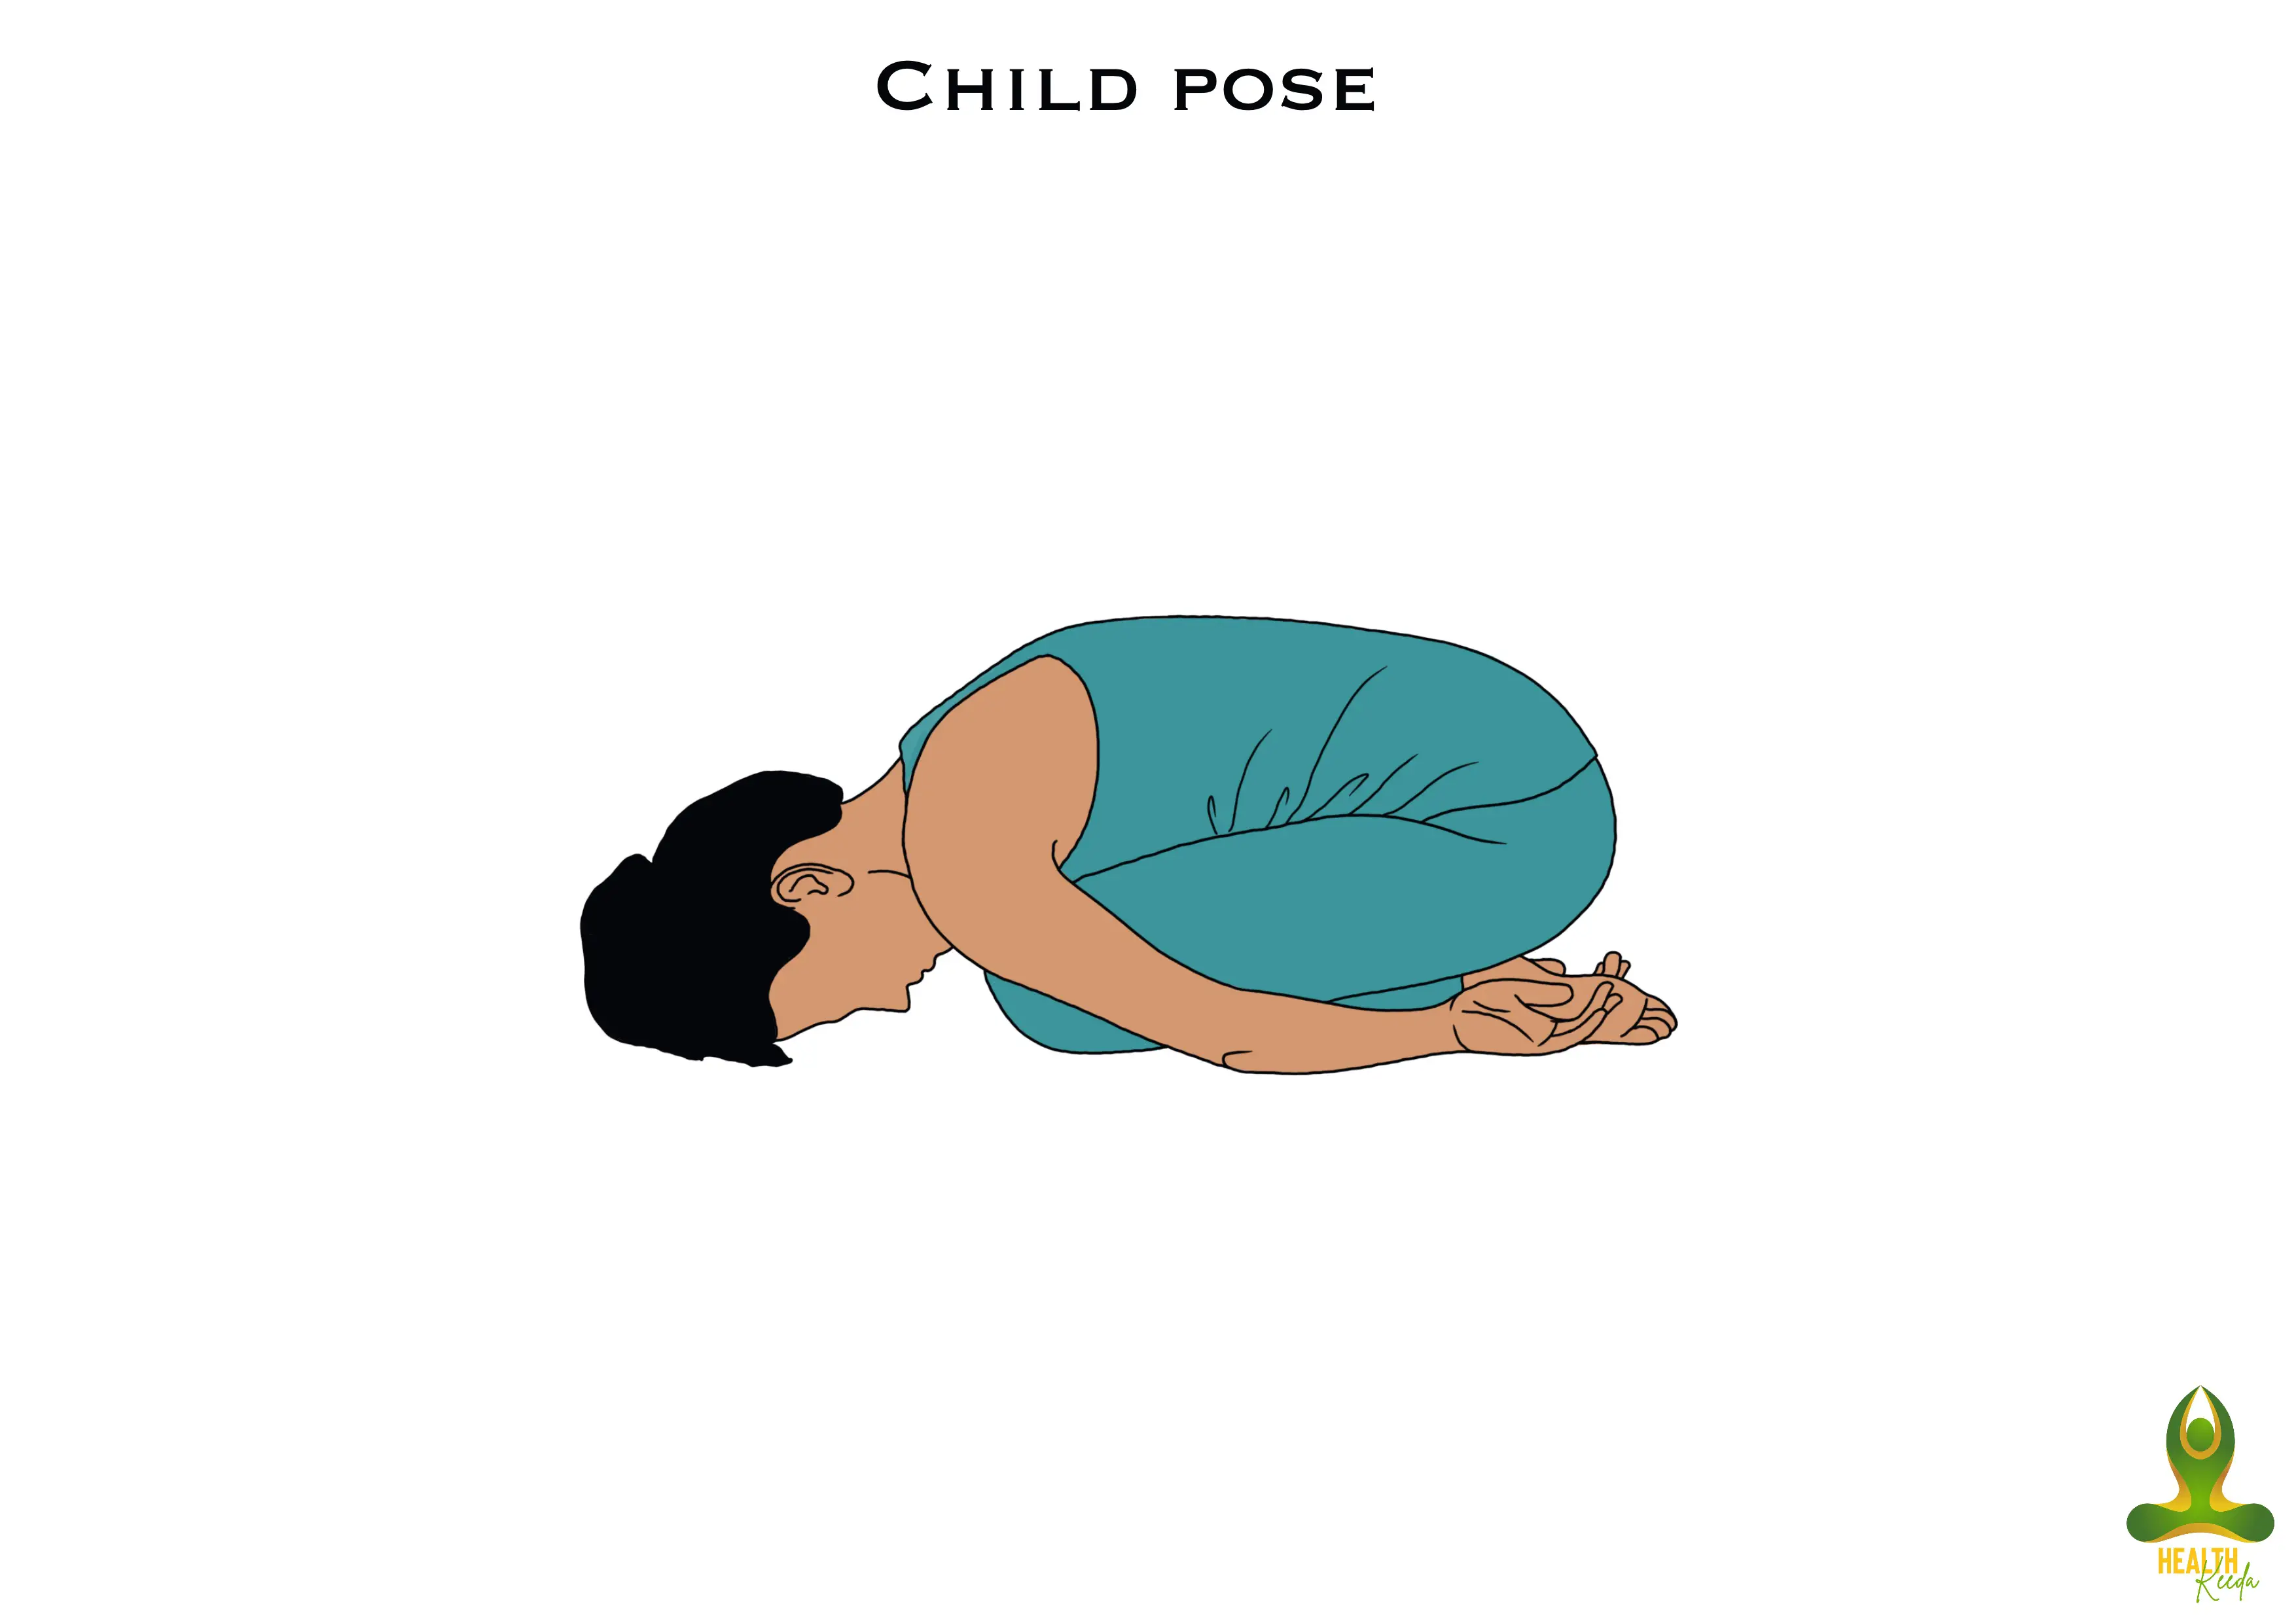 Child pose or Balasana - yoga for addiction